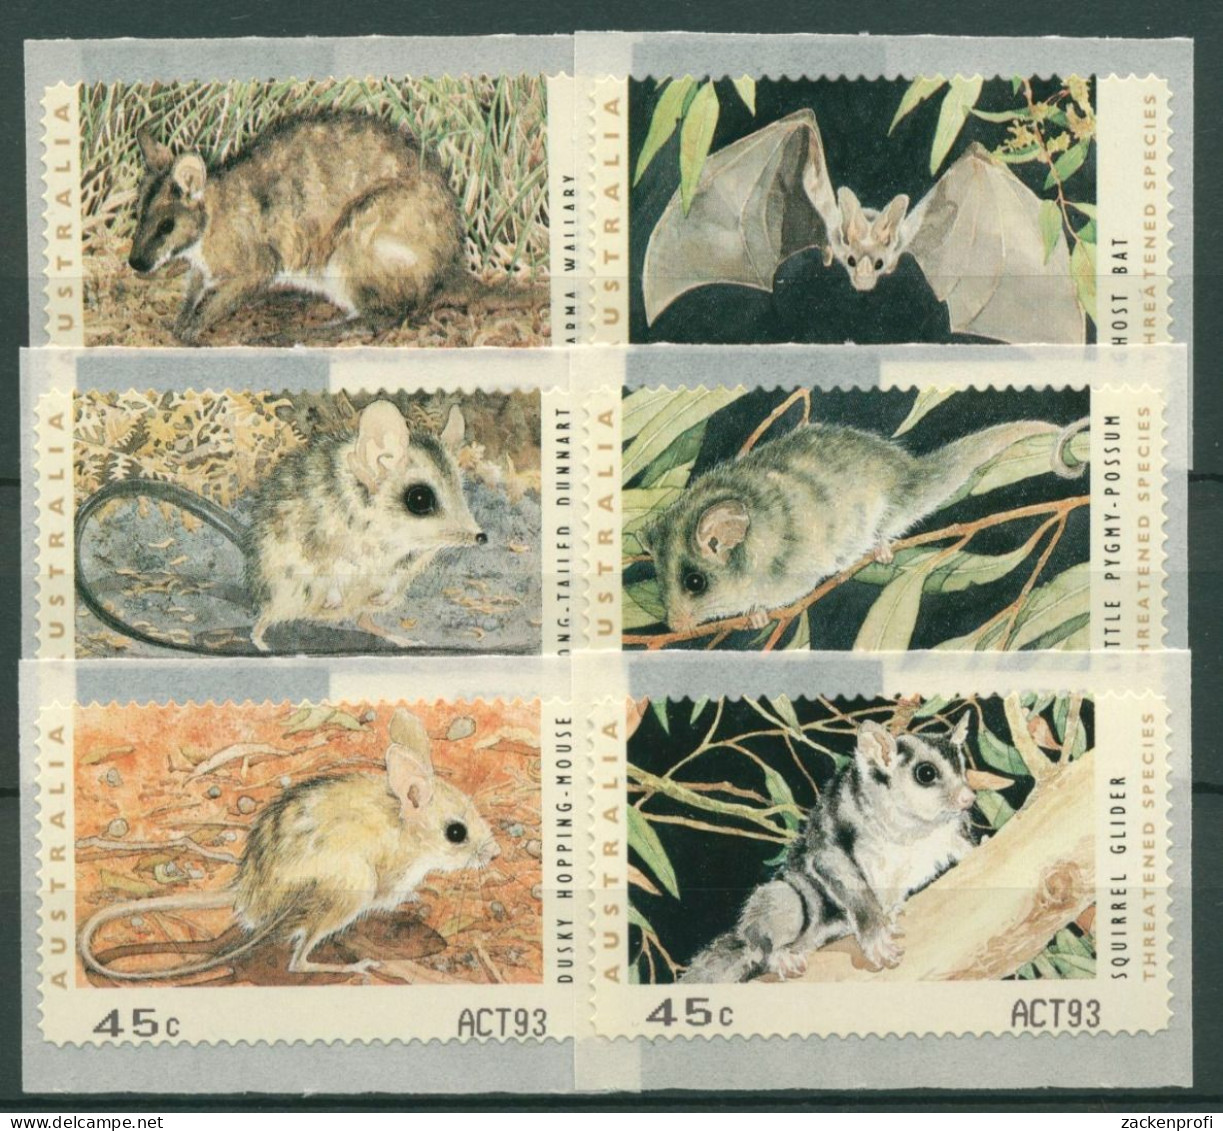 Australien 1993 Gefährdete Tiere Automatenmarken 27/32 S2, ACT93 Postfrisch - Vignette [ATM]